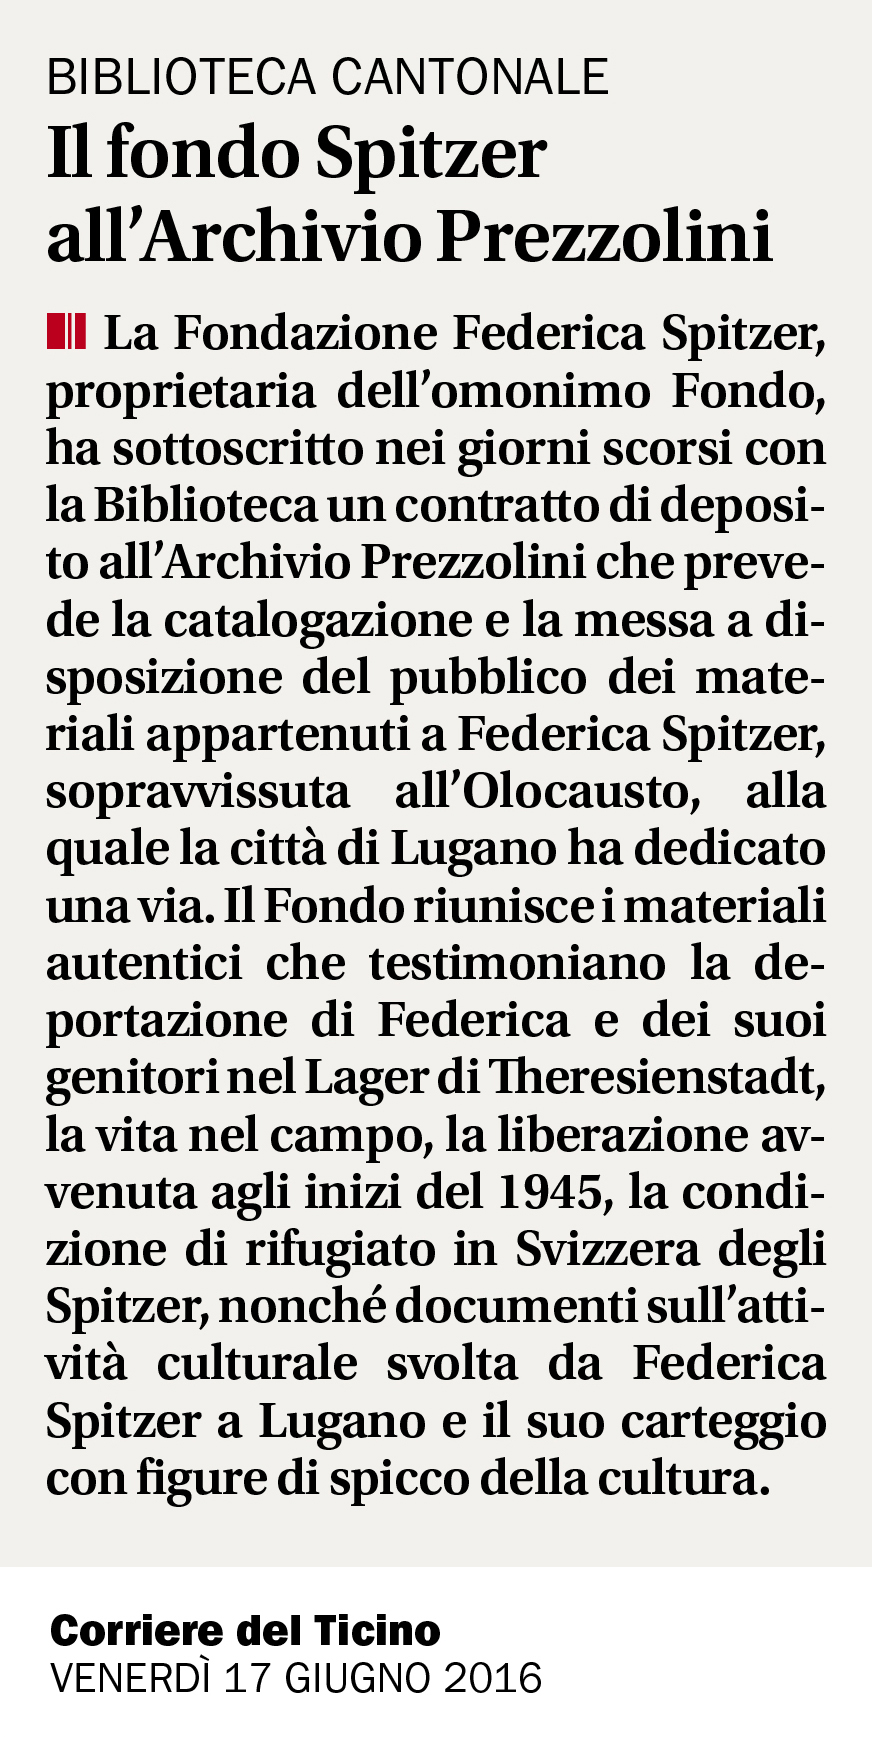 17.06.16 - Corriere del Ticino